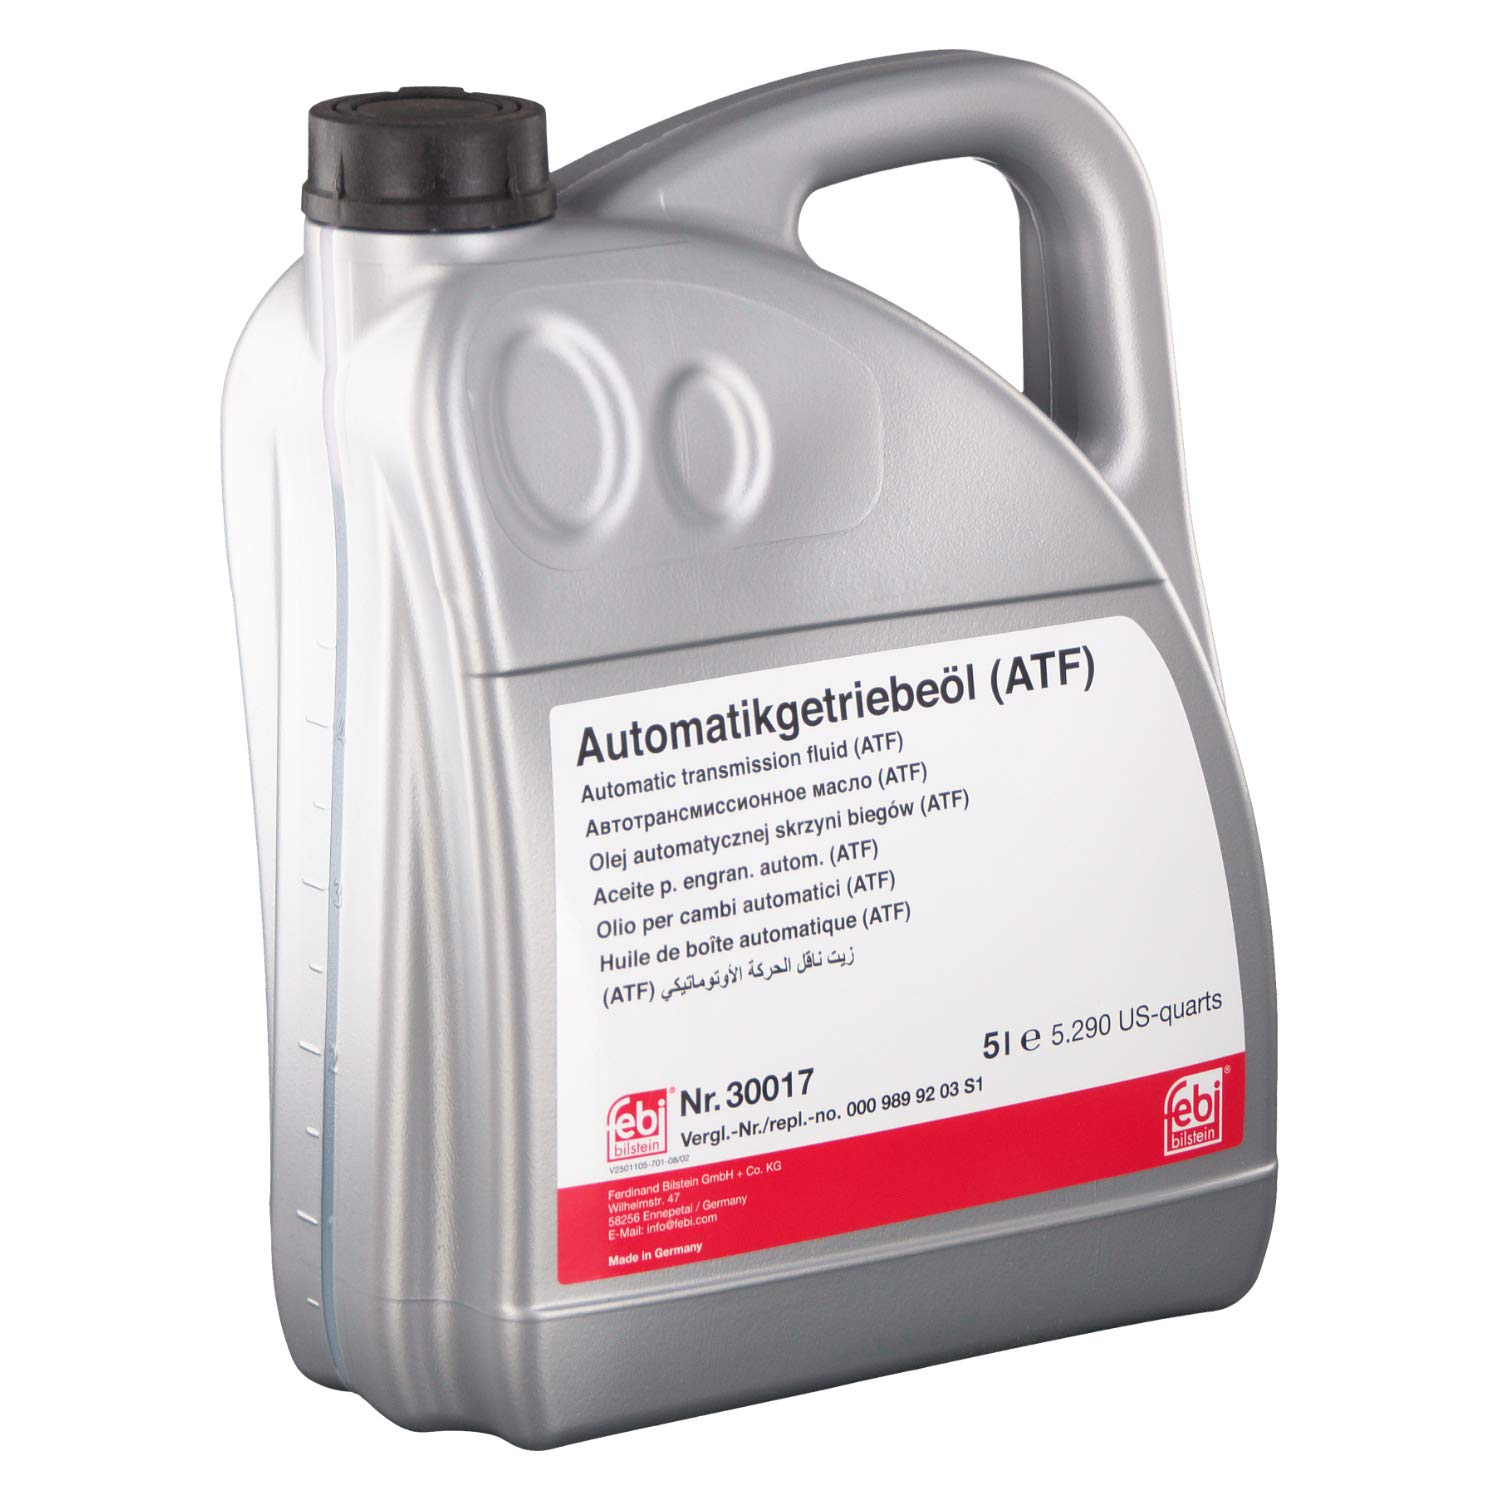 febi bilstein 30017 Automatikgetriebeöl (ATF) in automatischen Getrieben, Wandlern und Hydrolenkungen , 5 Liter von febi bilstein